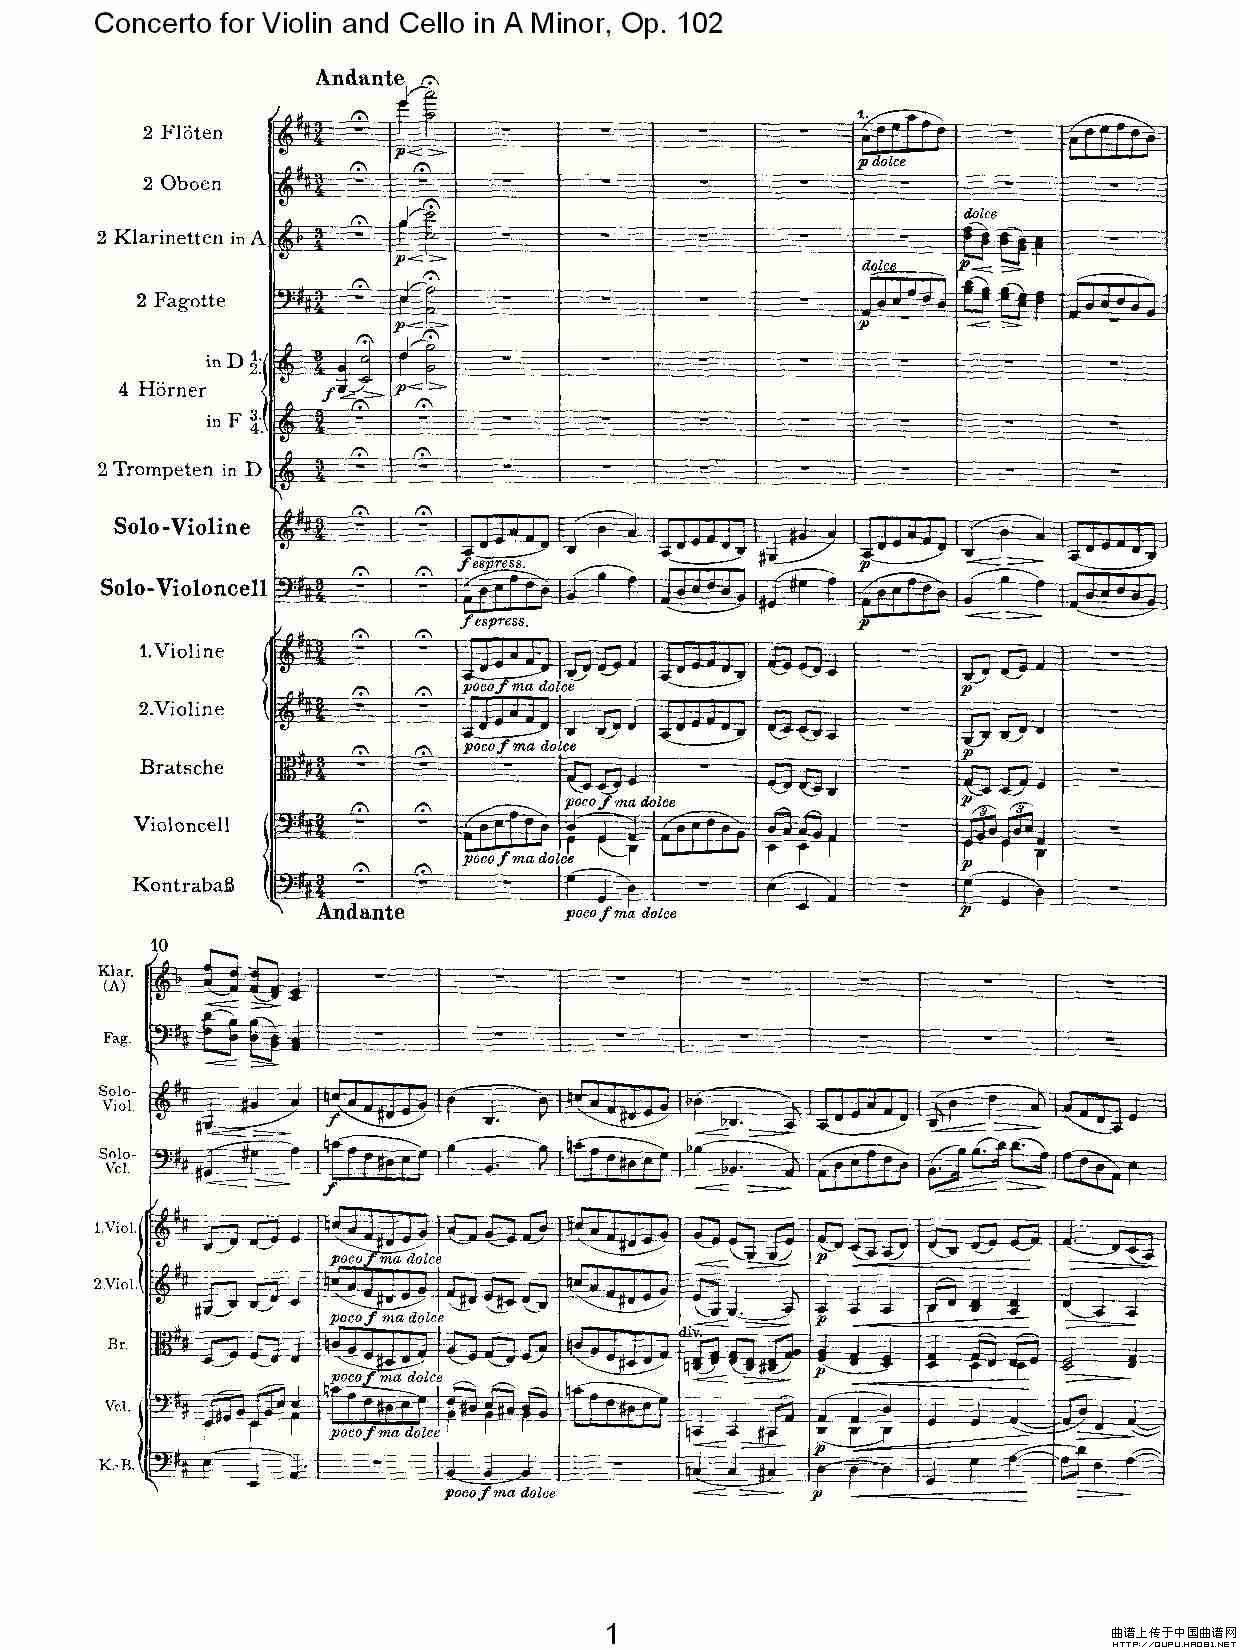 A小调小提琴与大提琴协奏曲, Op.102第二乐章